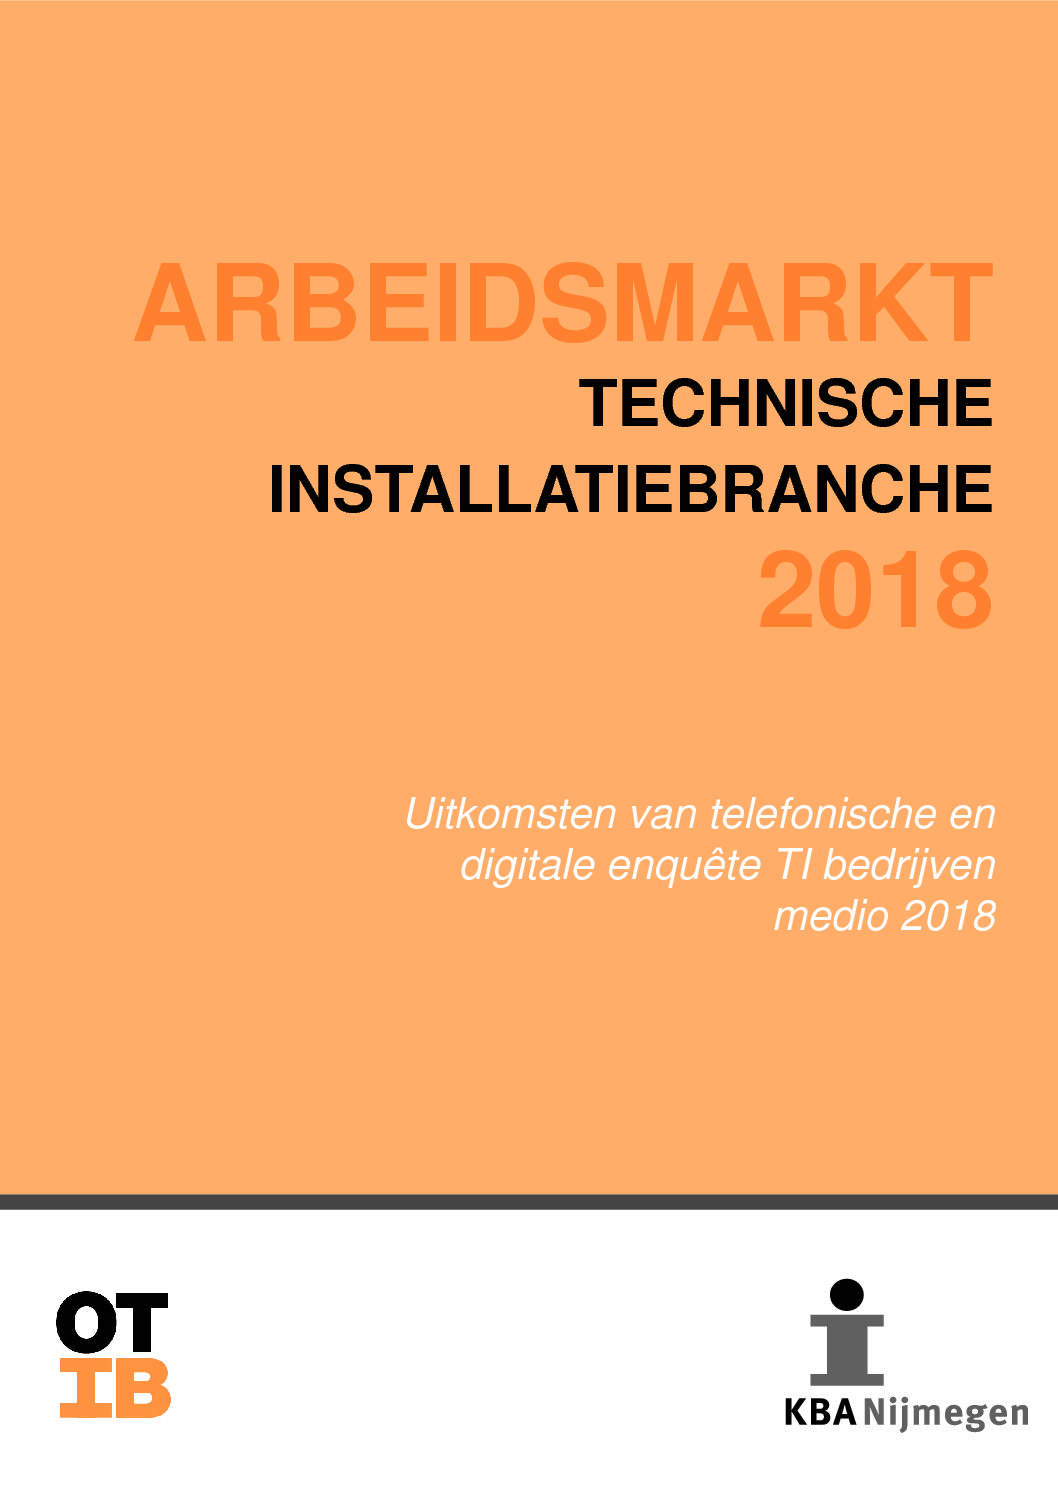 Arbeidsmarkt technische installatiebranche 2018